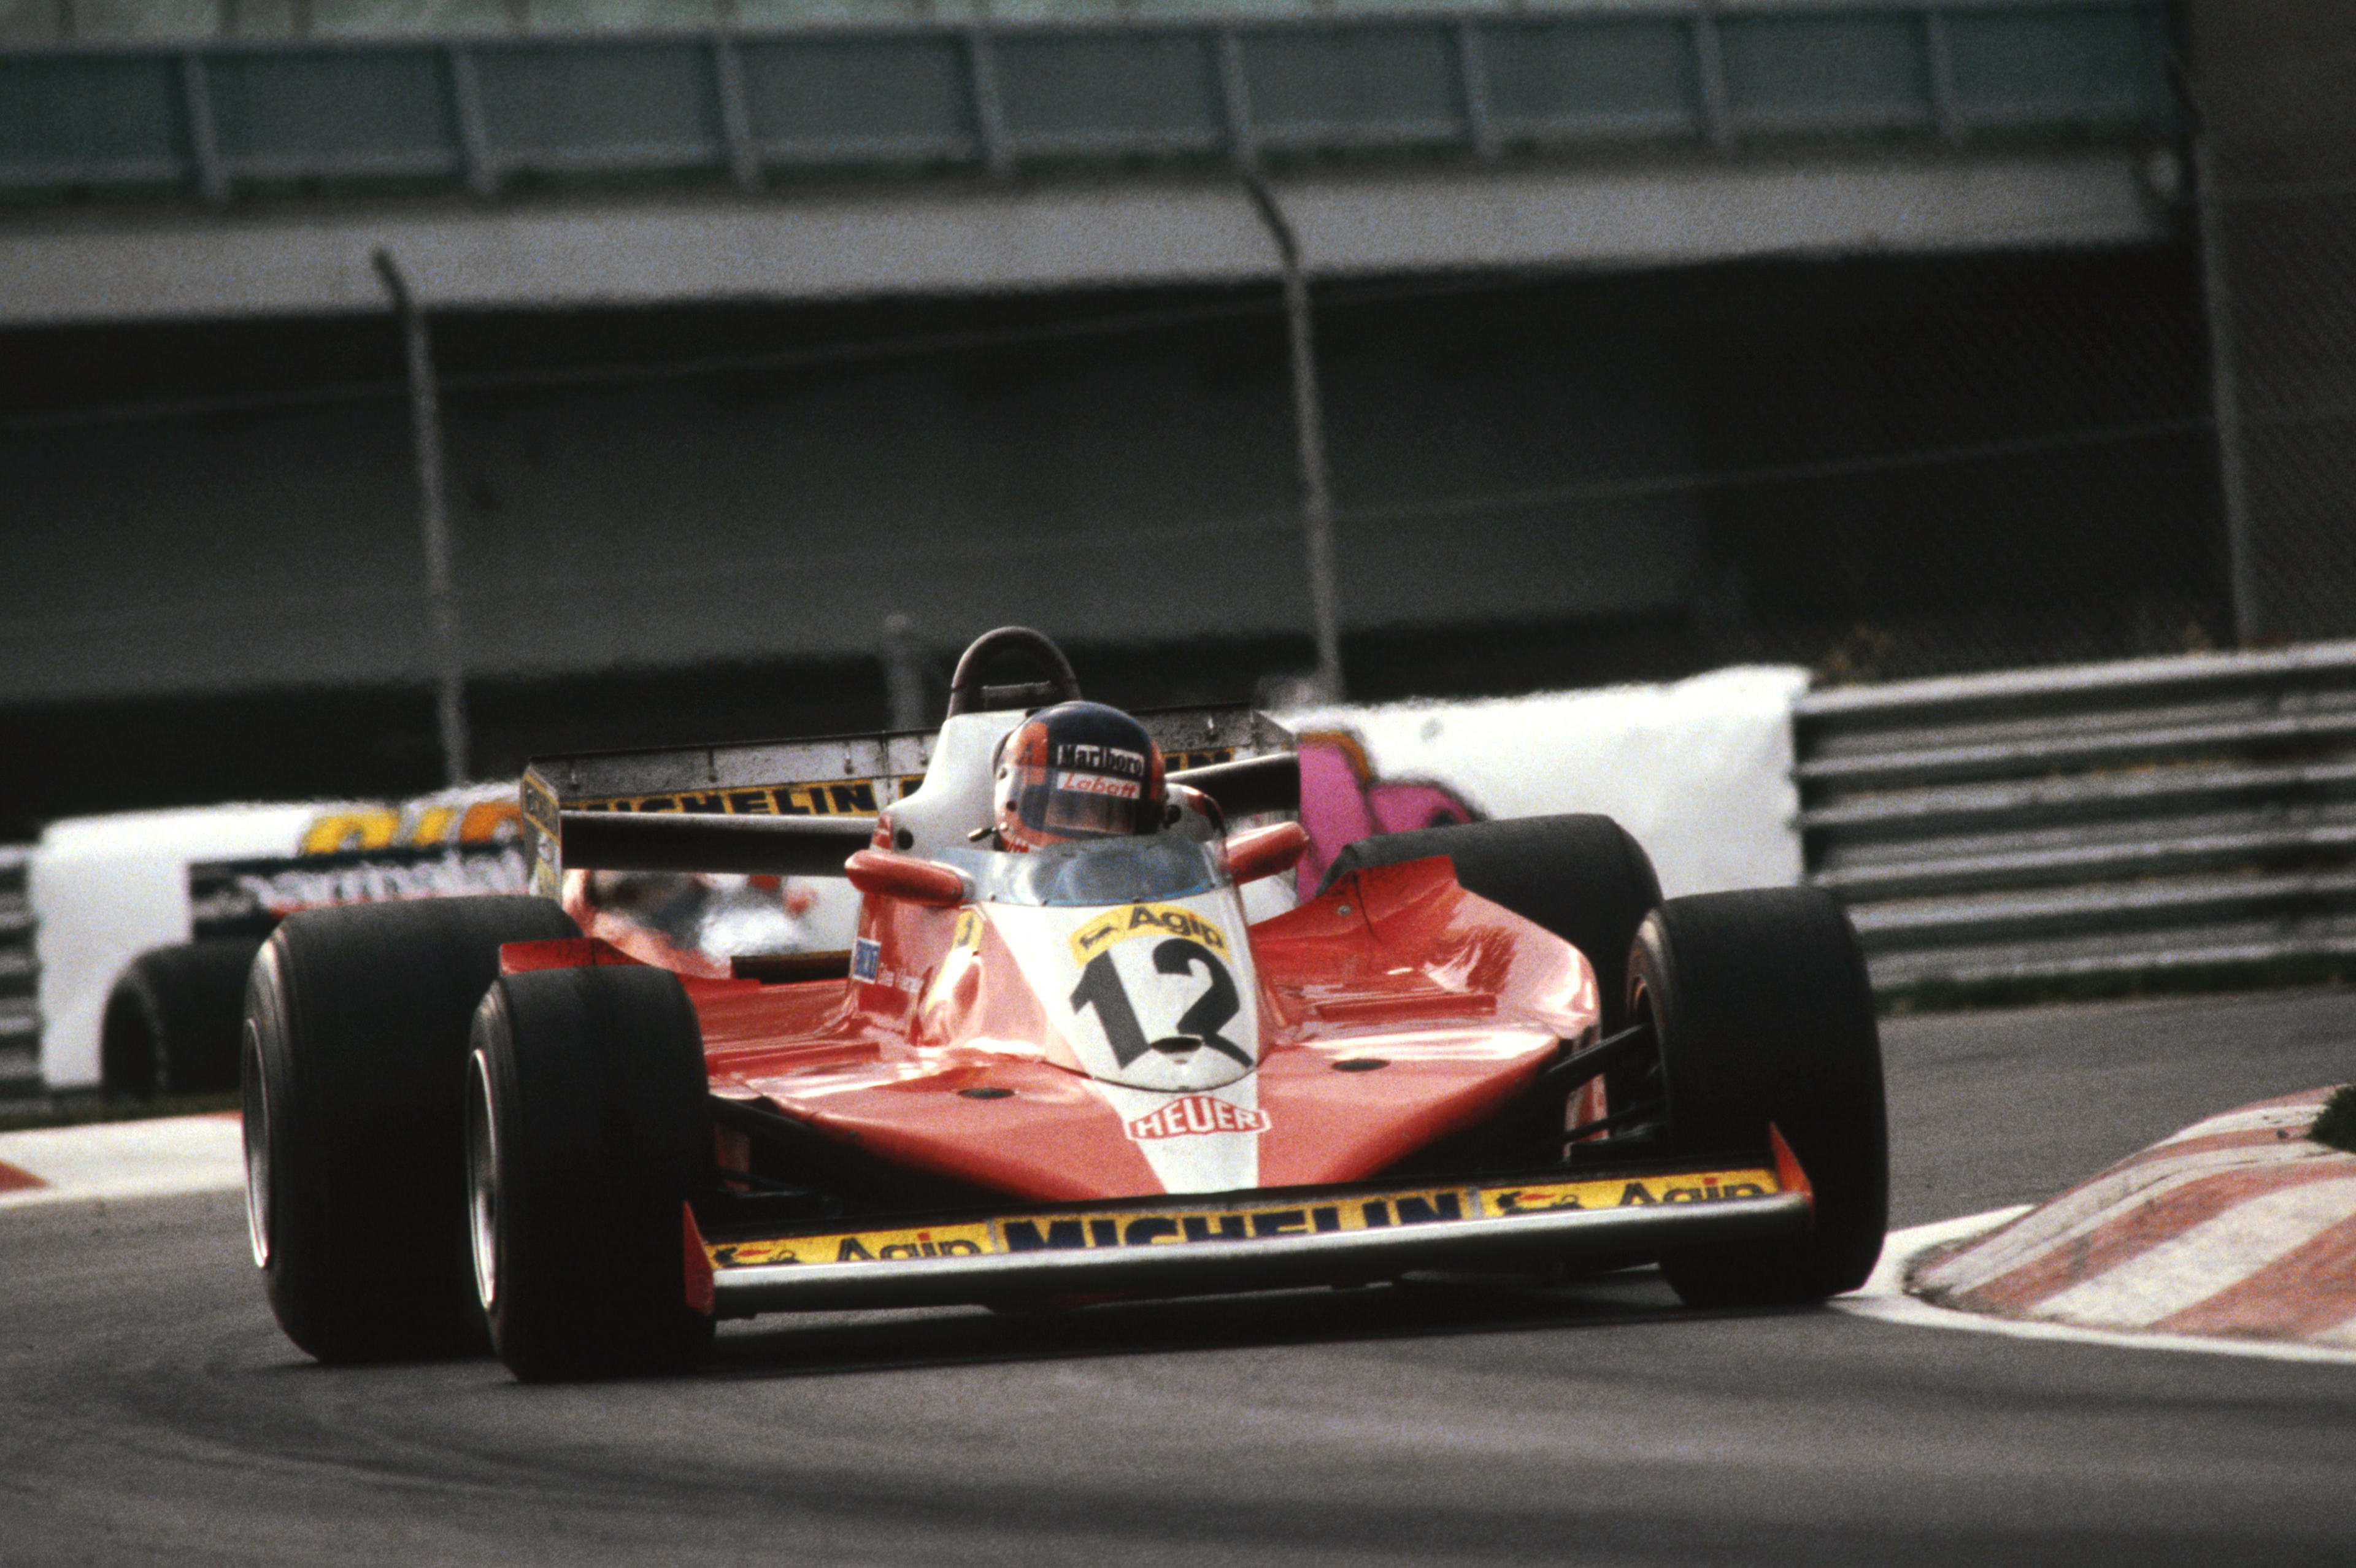 Gilles Villeneuve, pilote de légende de Ferrari, a donné son nom au circuit de Montréal qui accueille le Grand Prix du Canada.